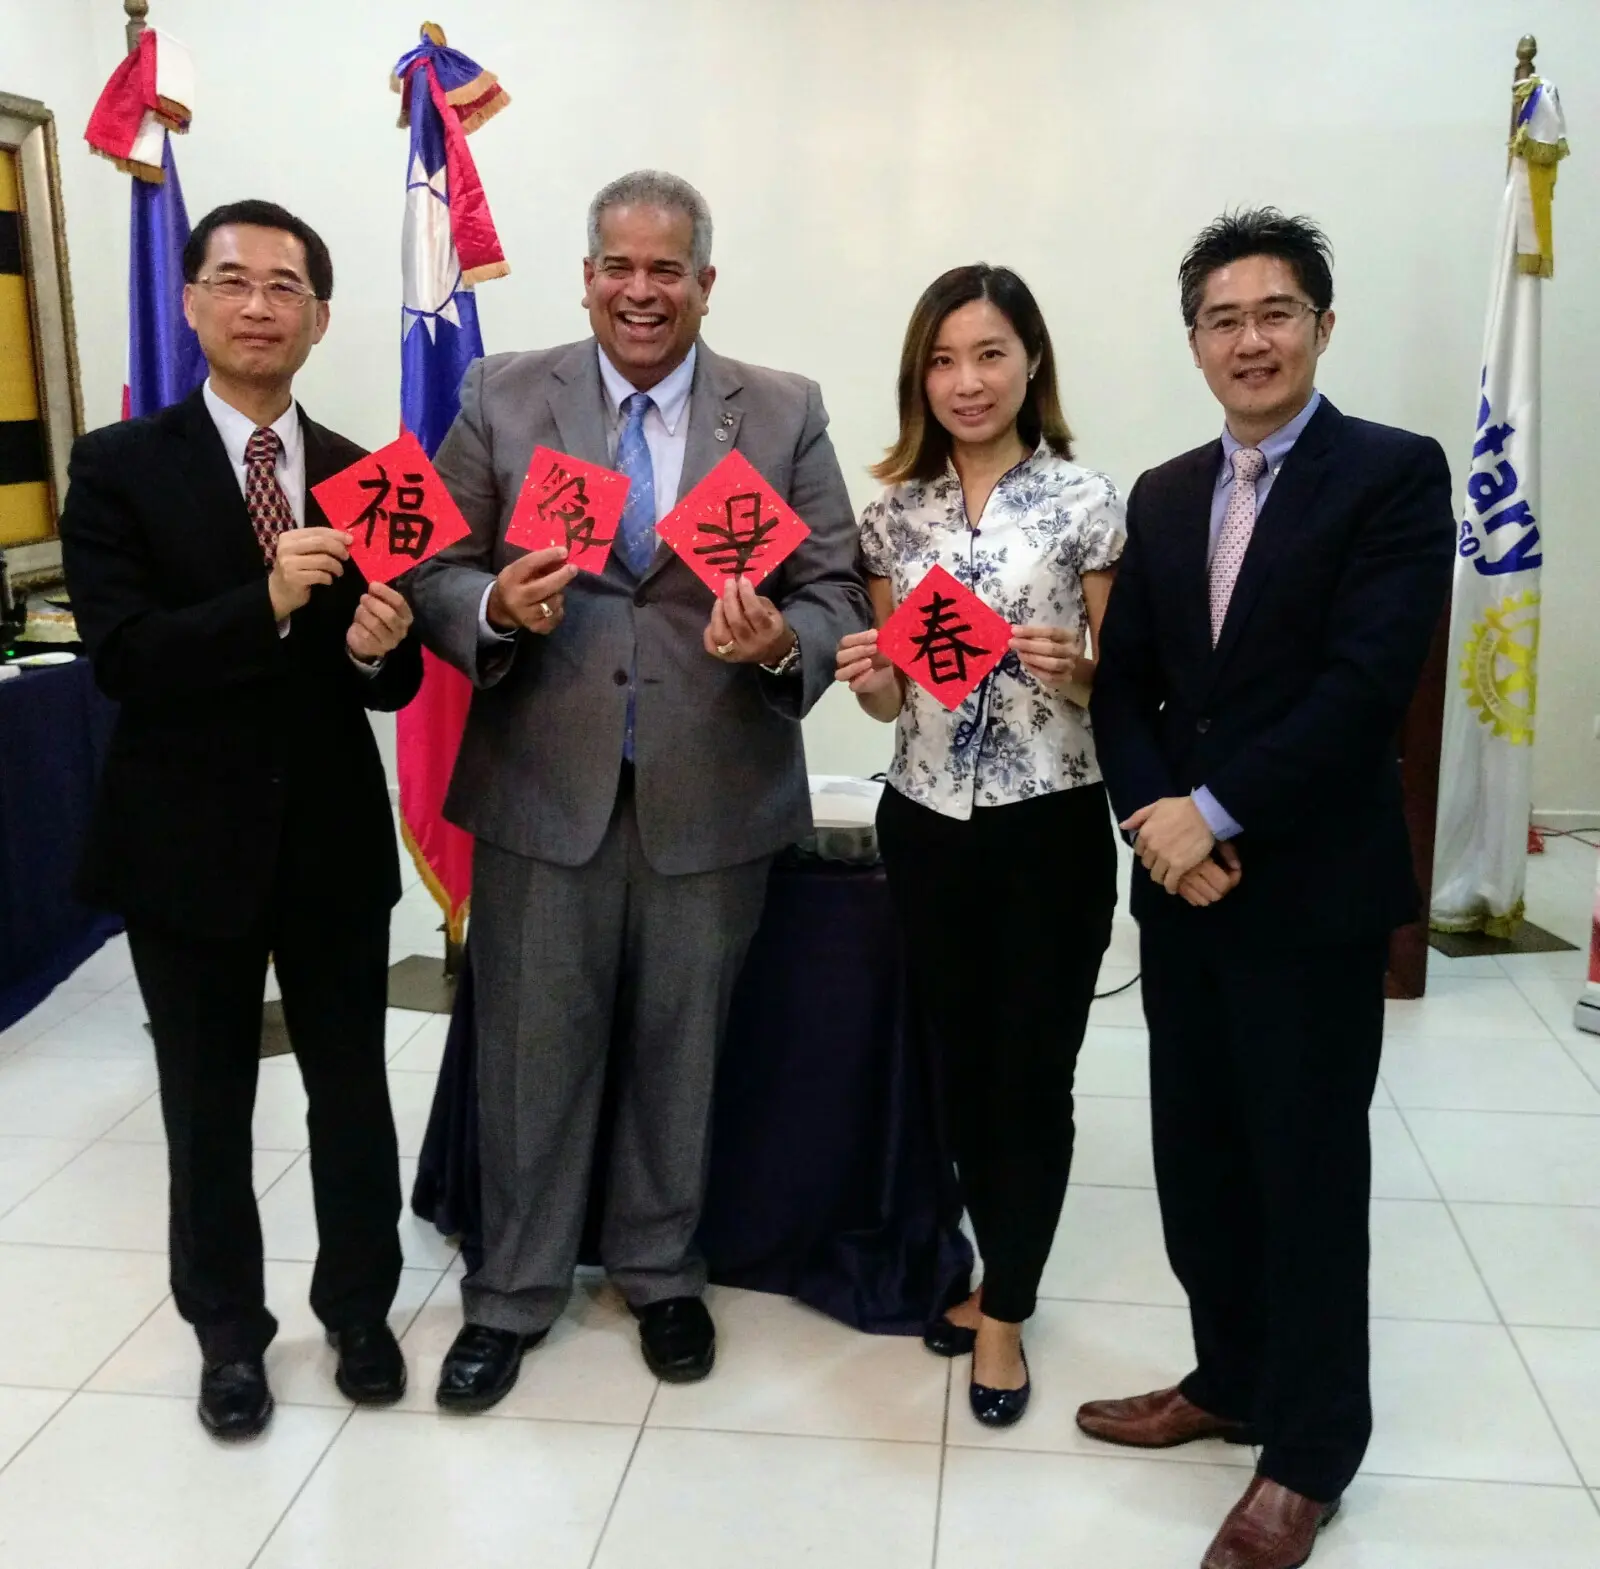 Embajada de Taiwán, Rotary e Interact se unen para presentación de becas